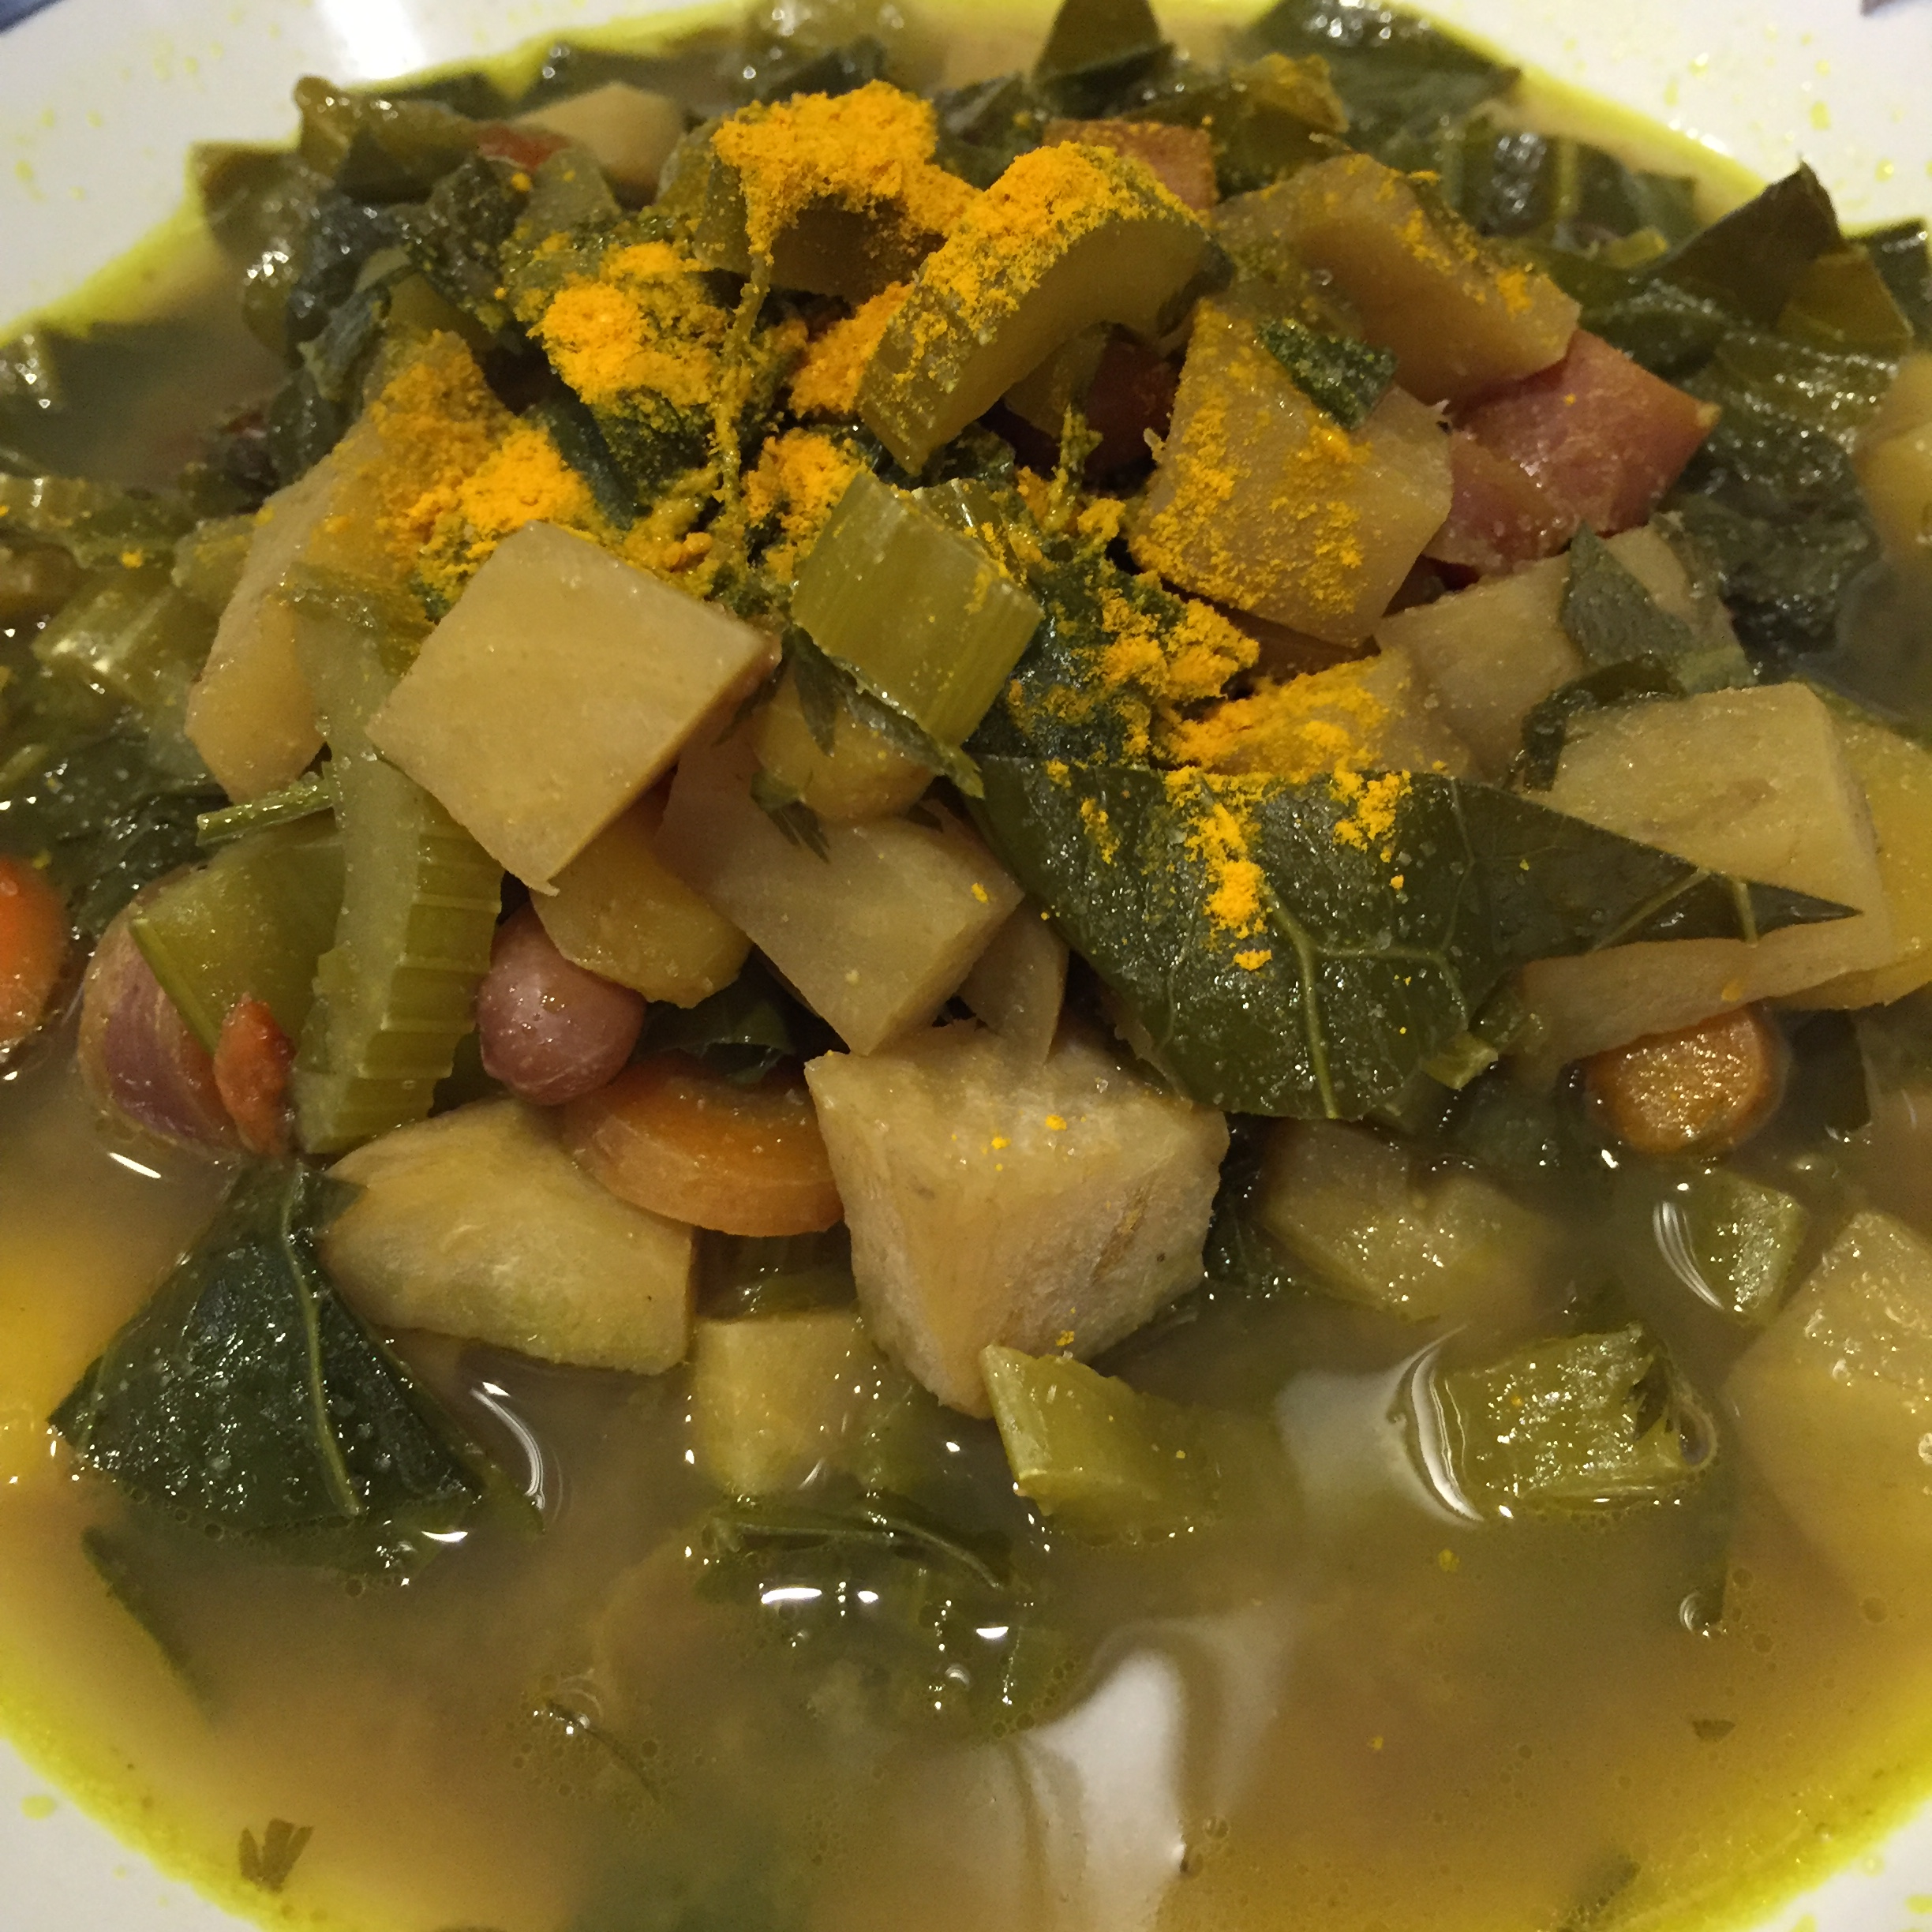 veggie-drawer-soup-served.png